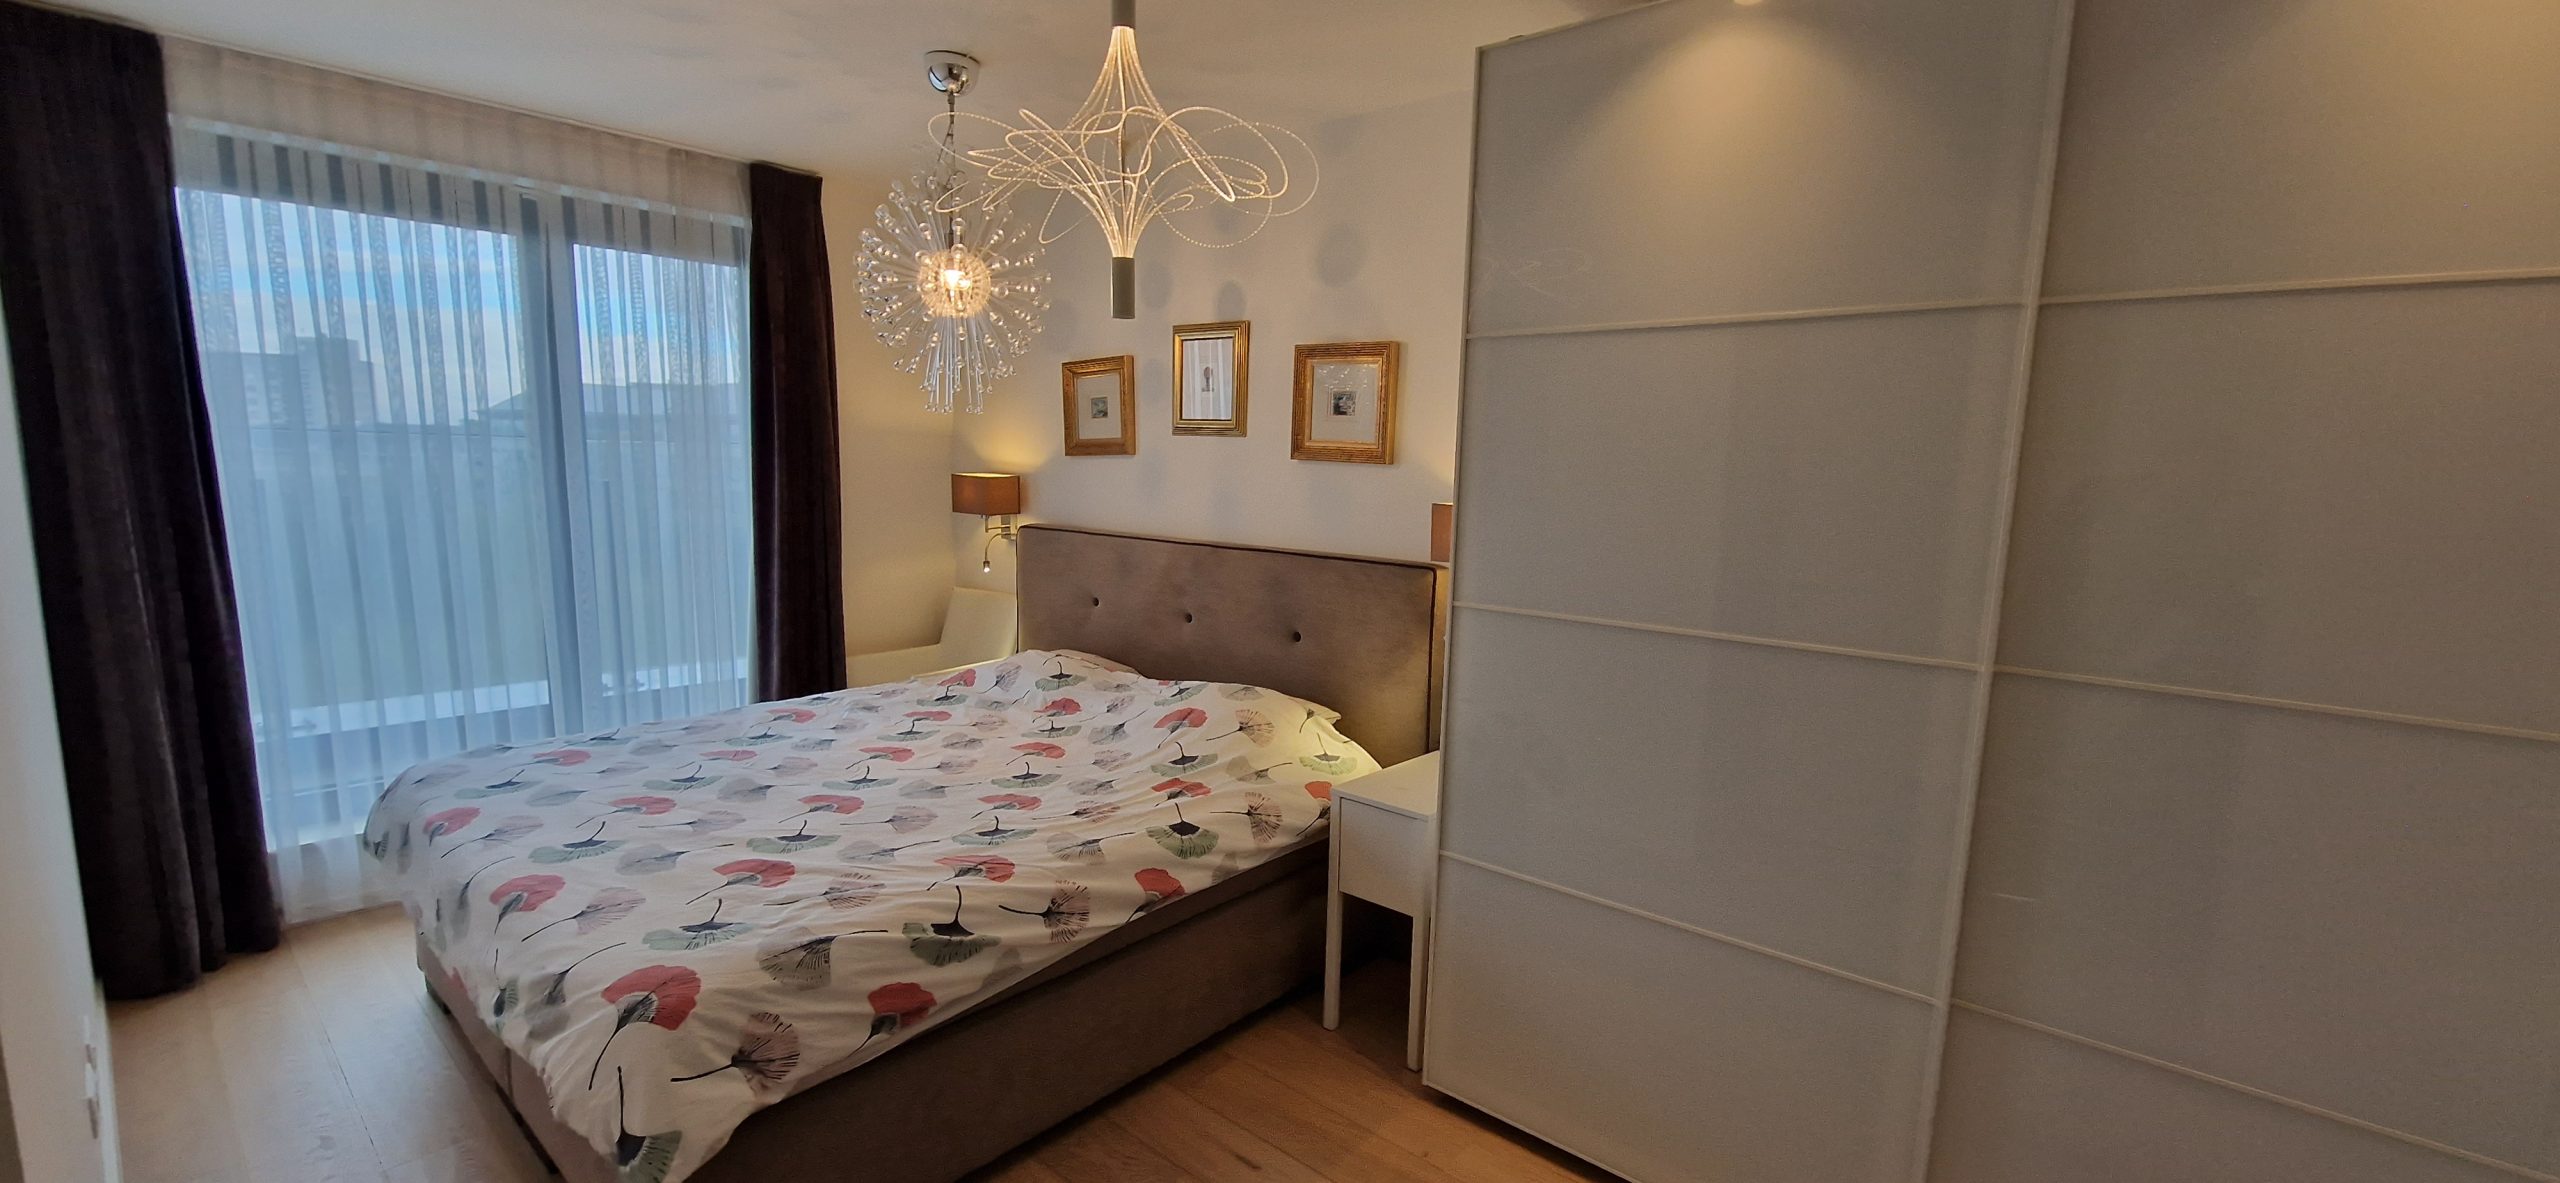 apartment-for-rent-in-lambert-bedroom